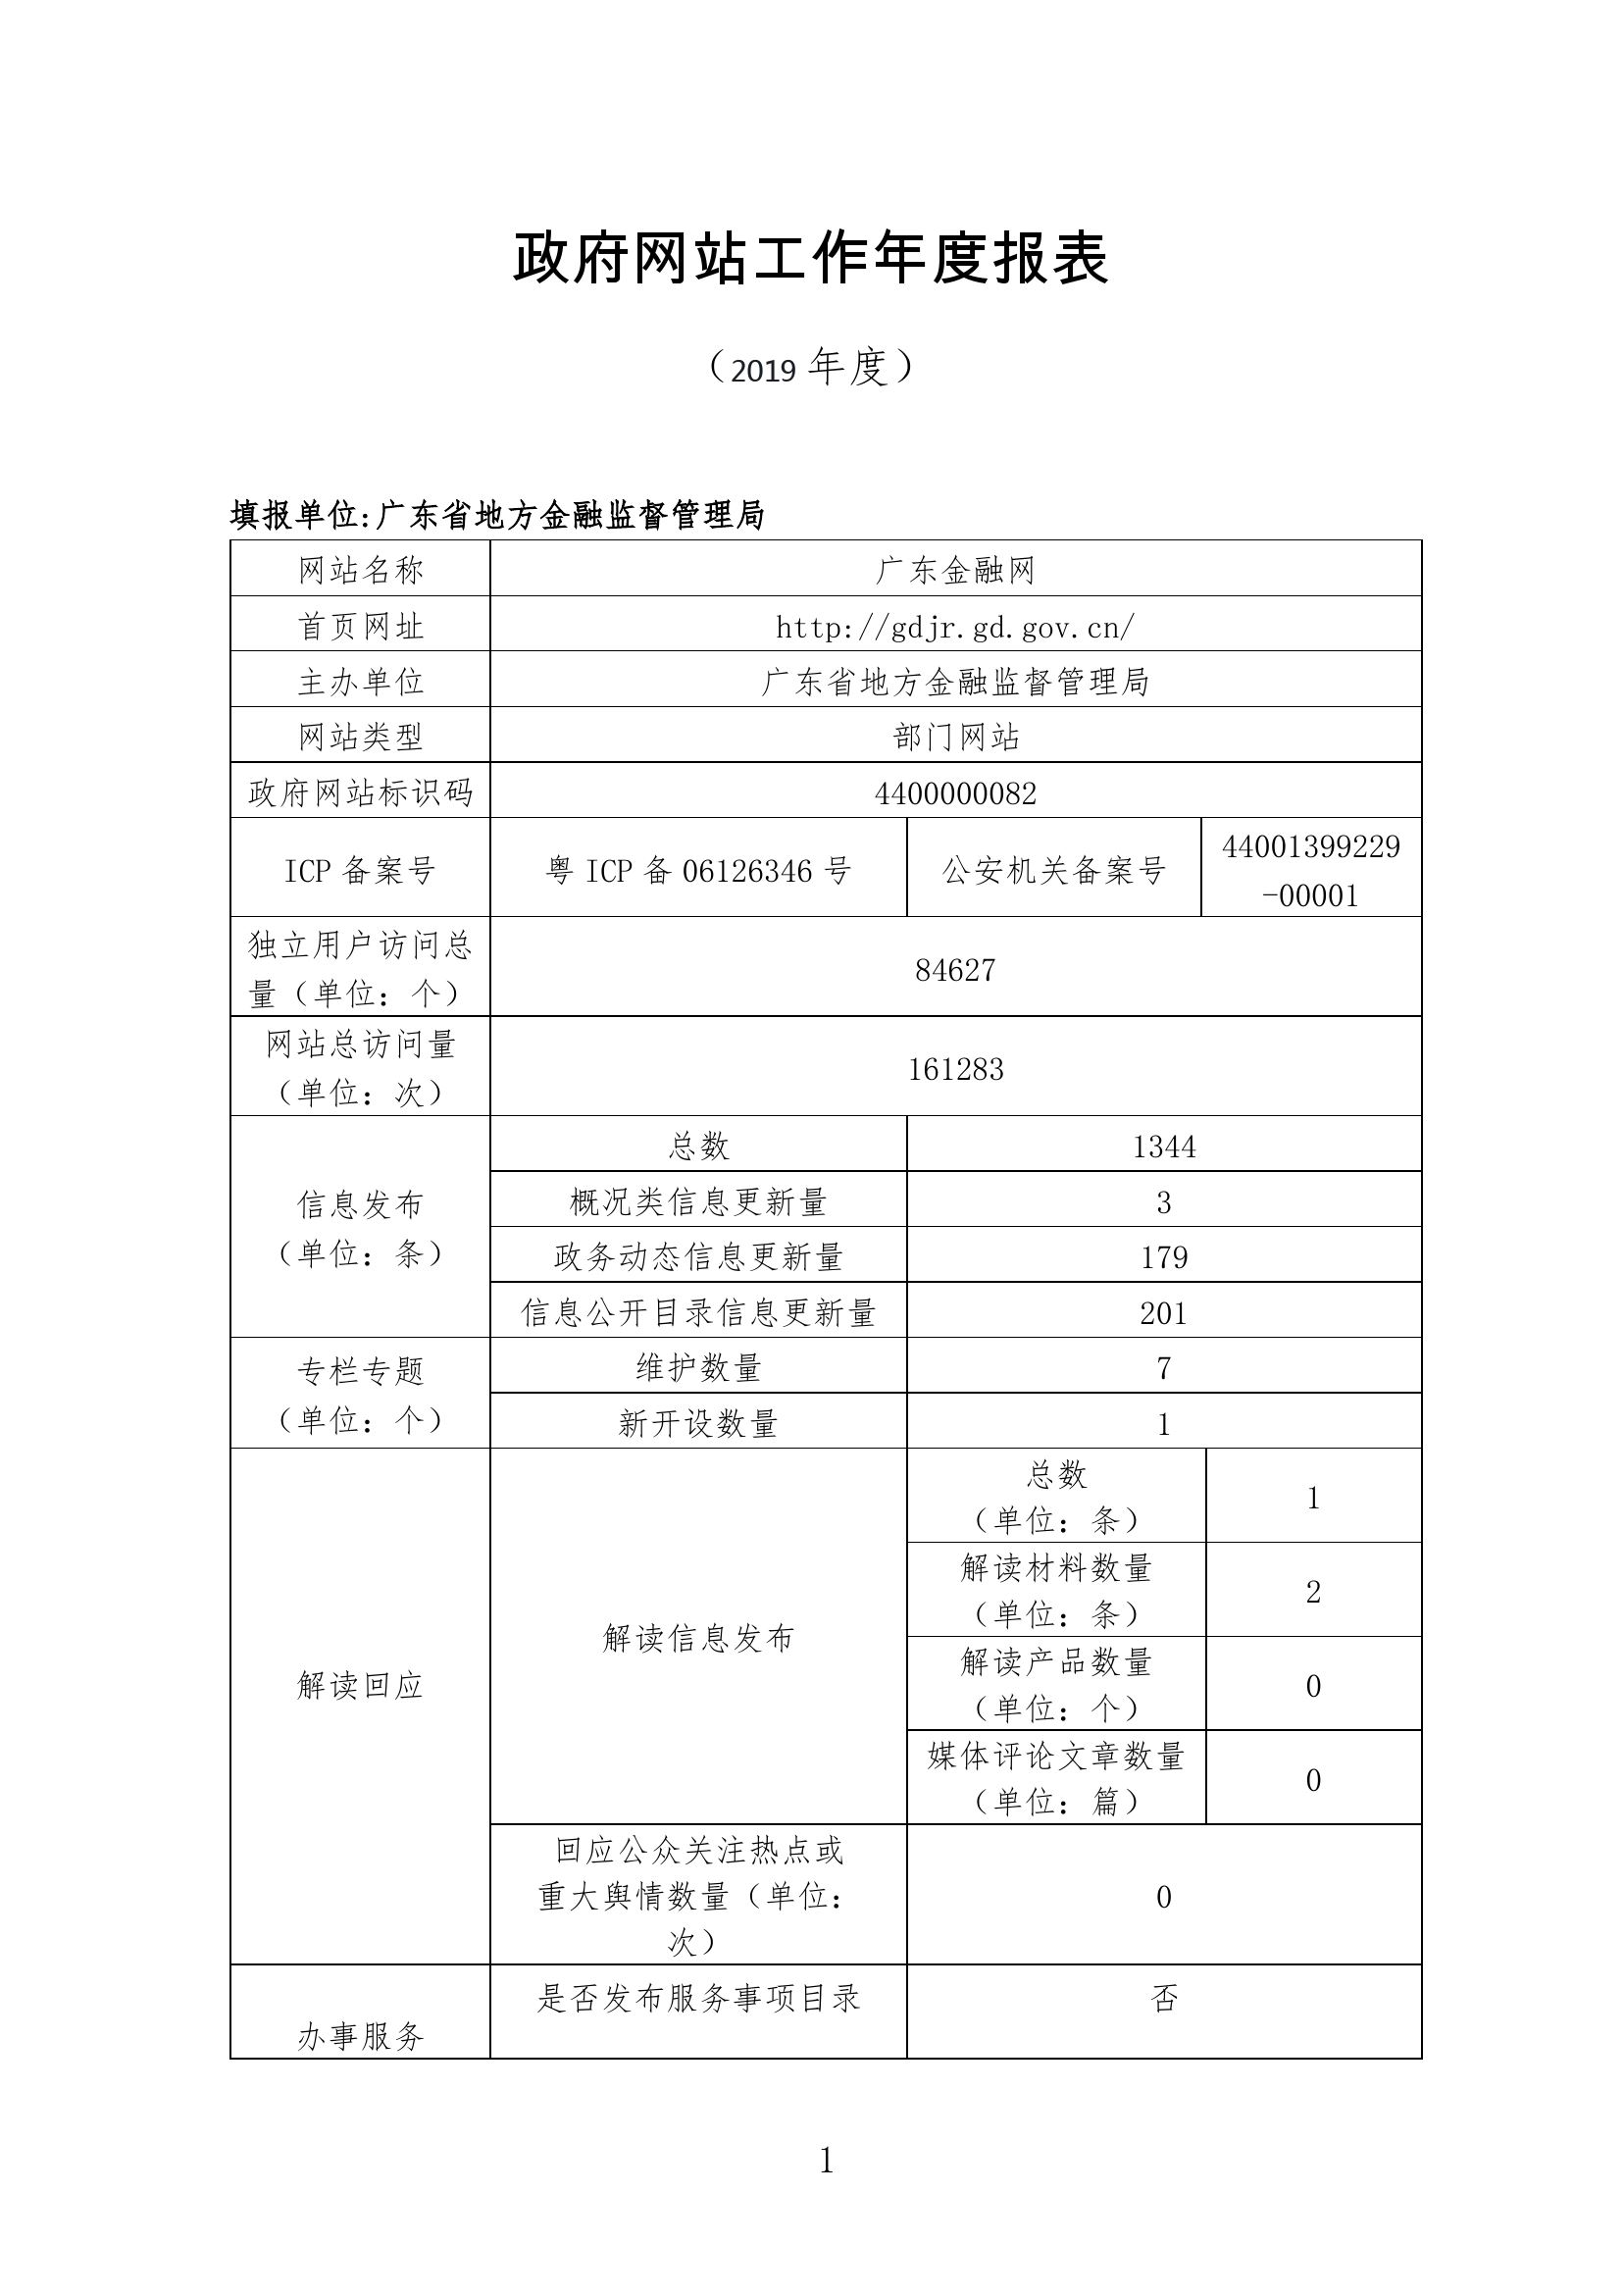 广东省地方金融监督管理局政府网站年度工作报告.jpg